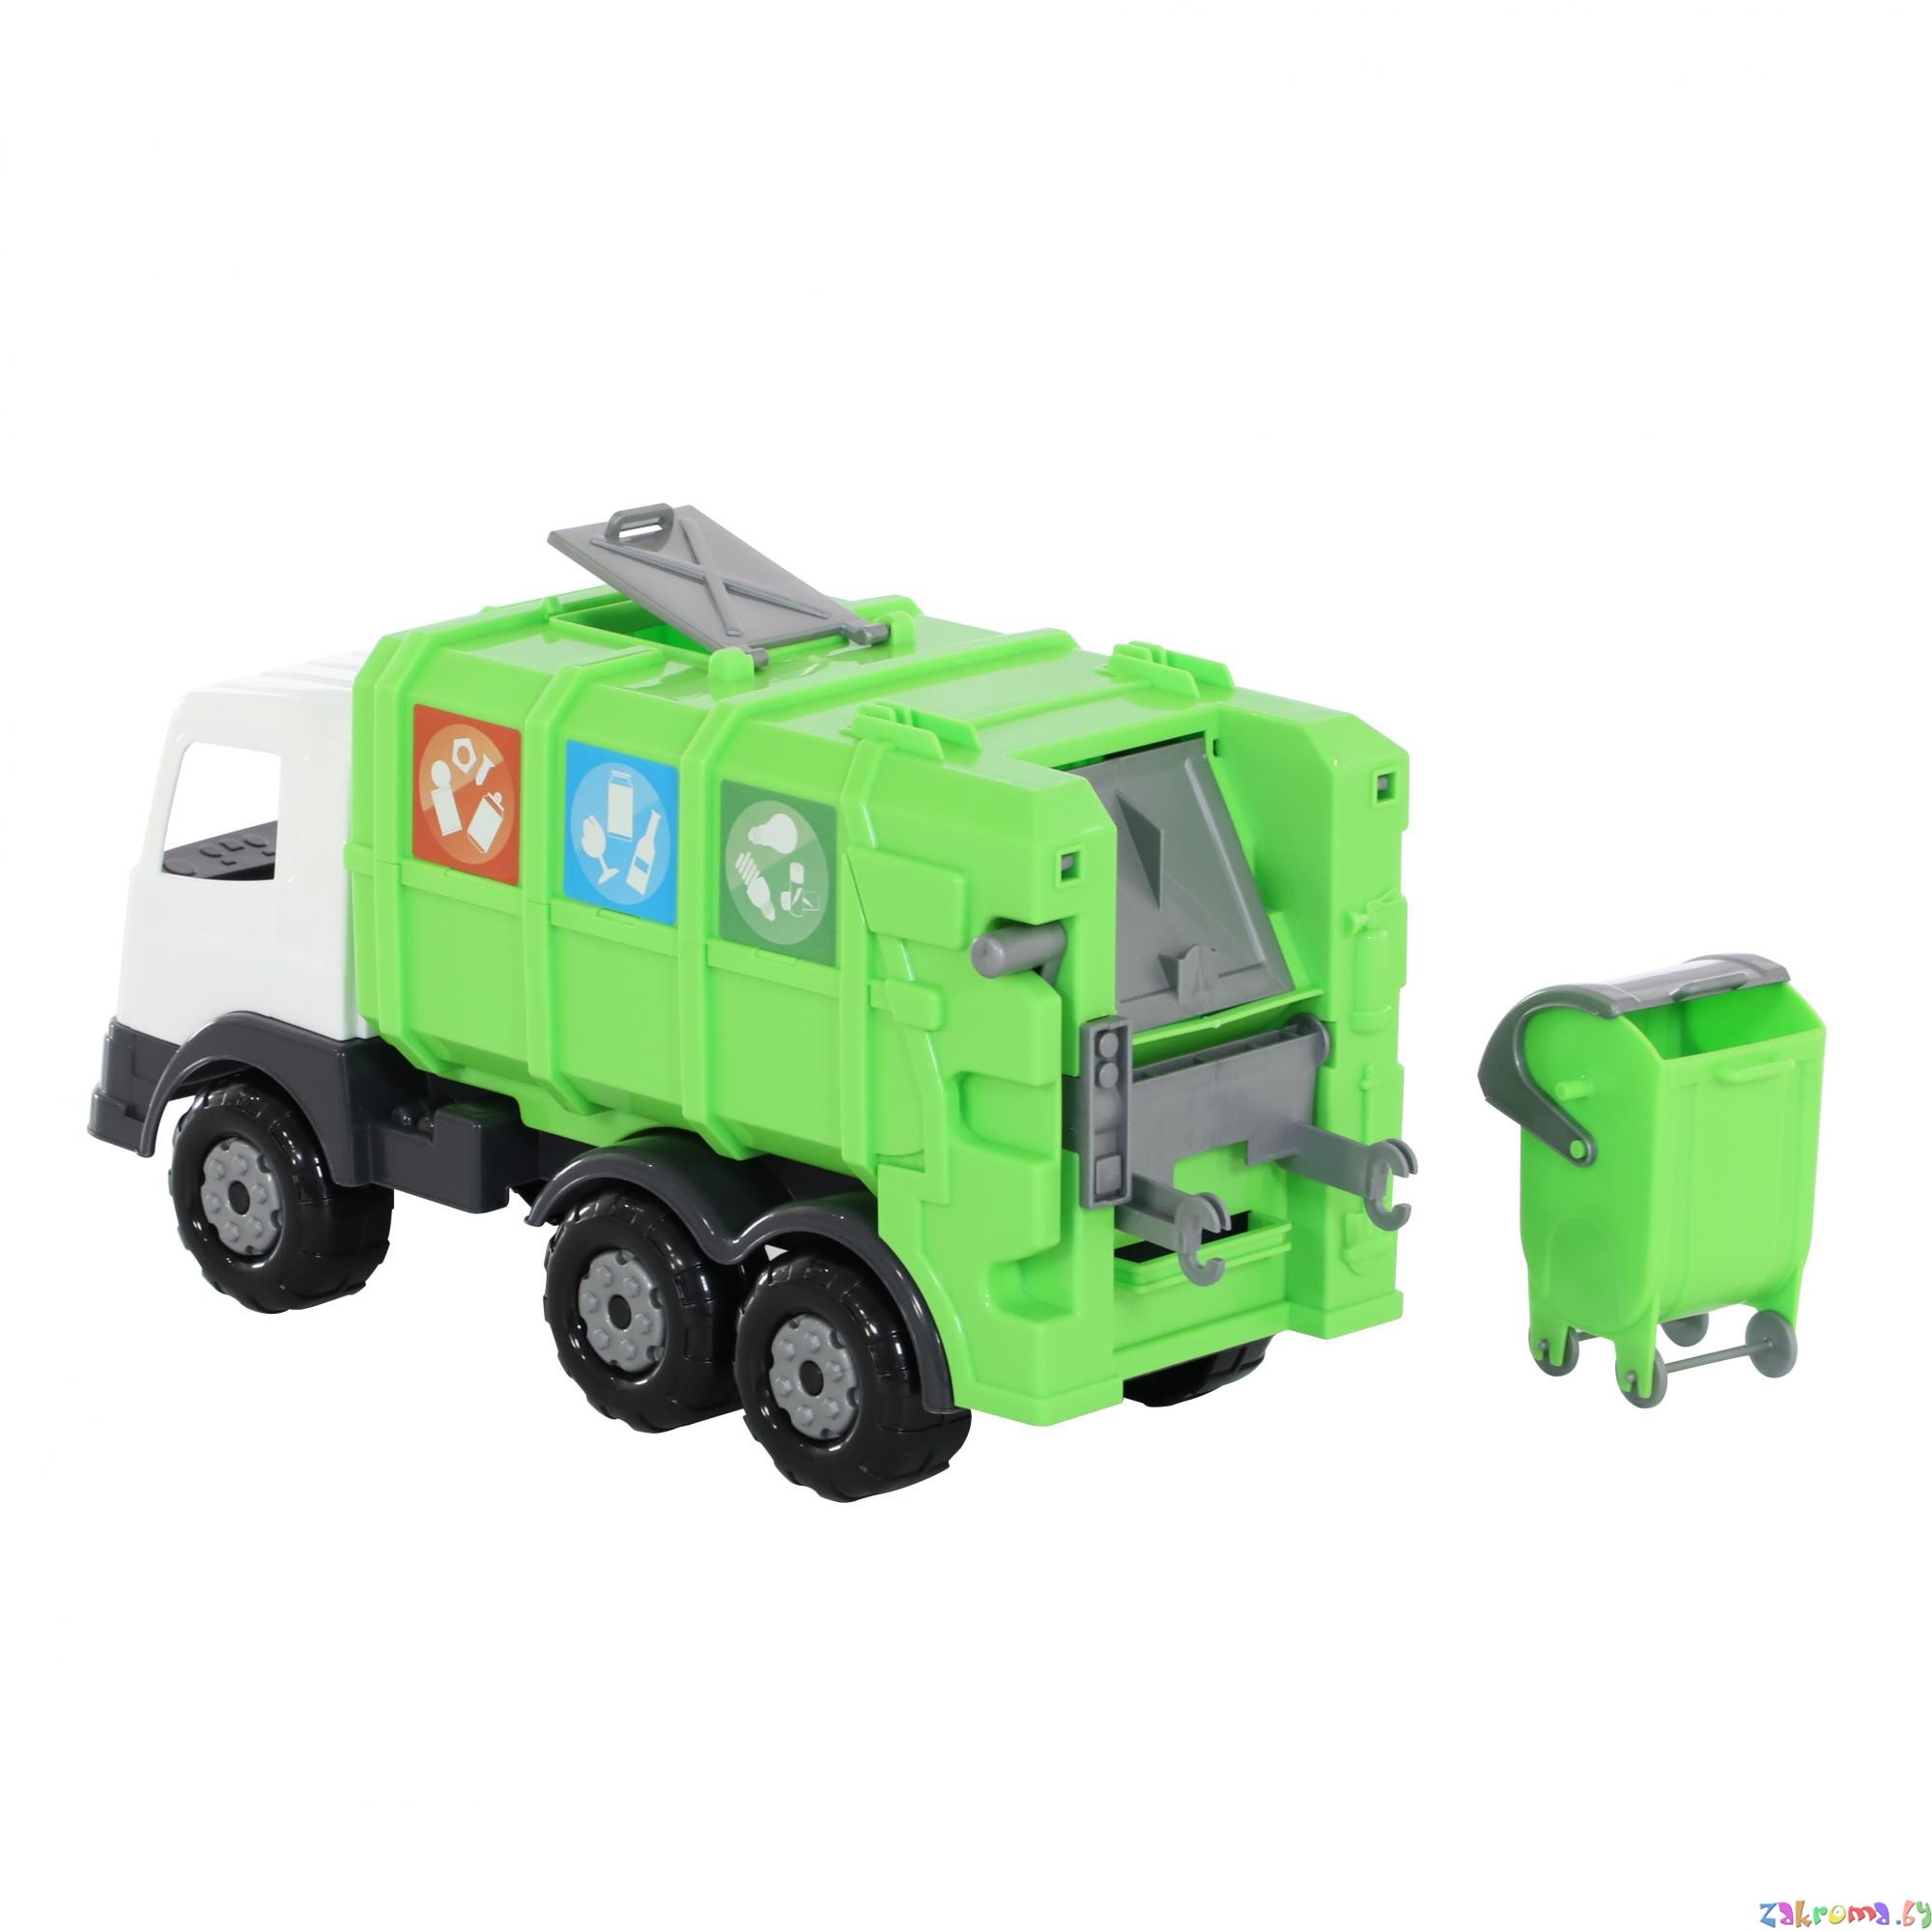 Детская машинка Престиж с мусорным контейнером, автомобиль коммунальный №2. Цвет салатовый. Полесье. Арт. 73211.